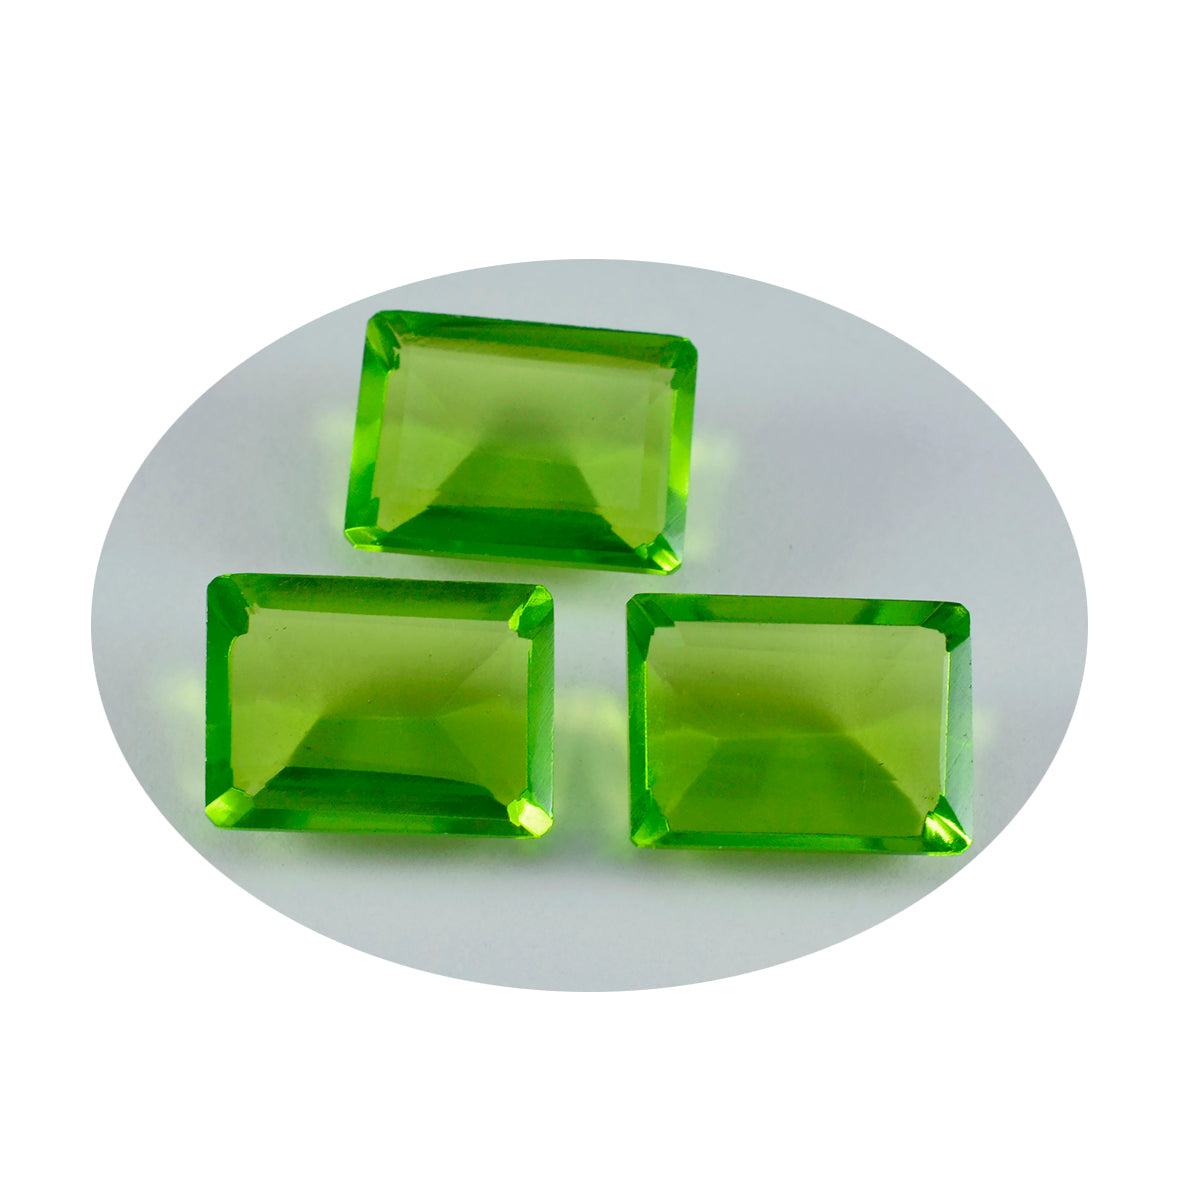 riyogems 1 шт. зеленый перидот cz граненый 10x14 мм восьмиугольная форма красивый качественный свободный драгоценный камень